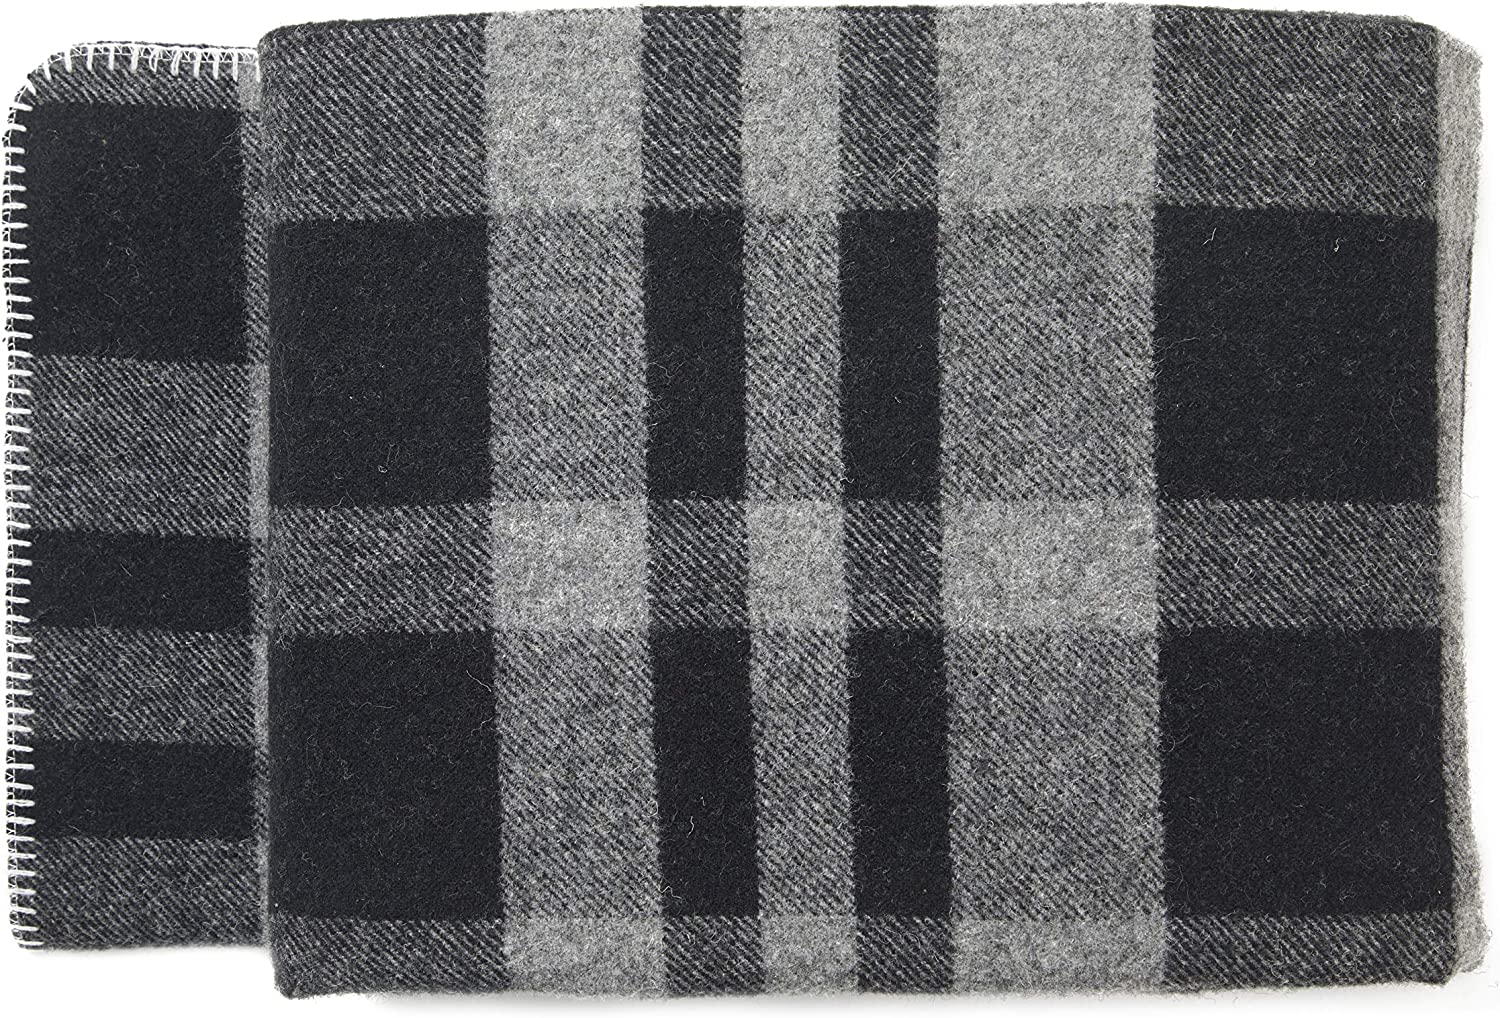 AusGolden Wool Blanket